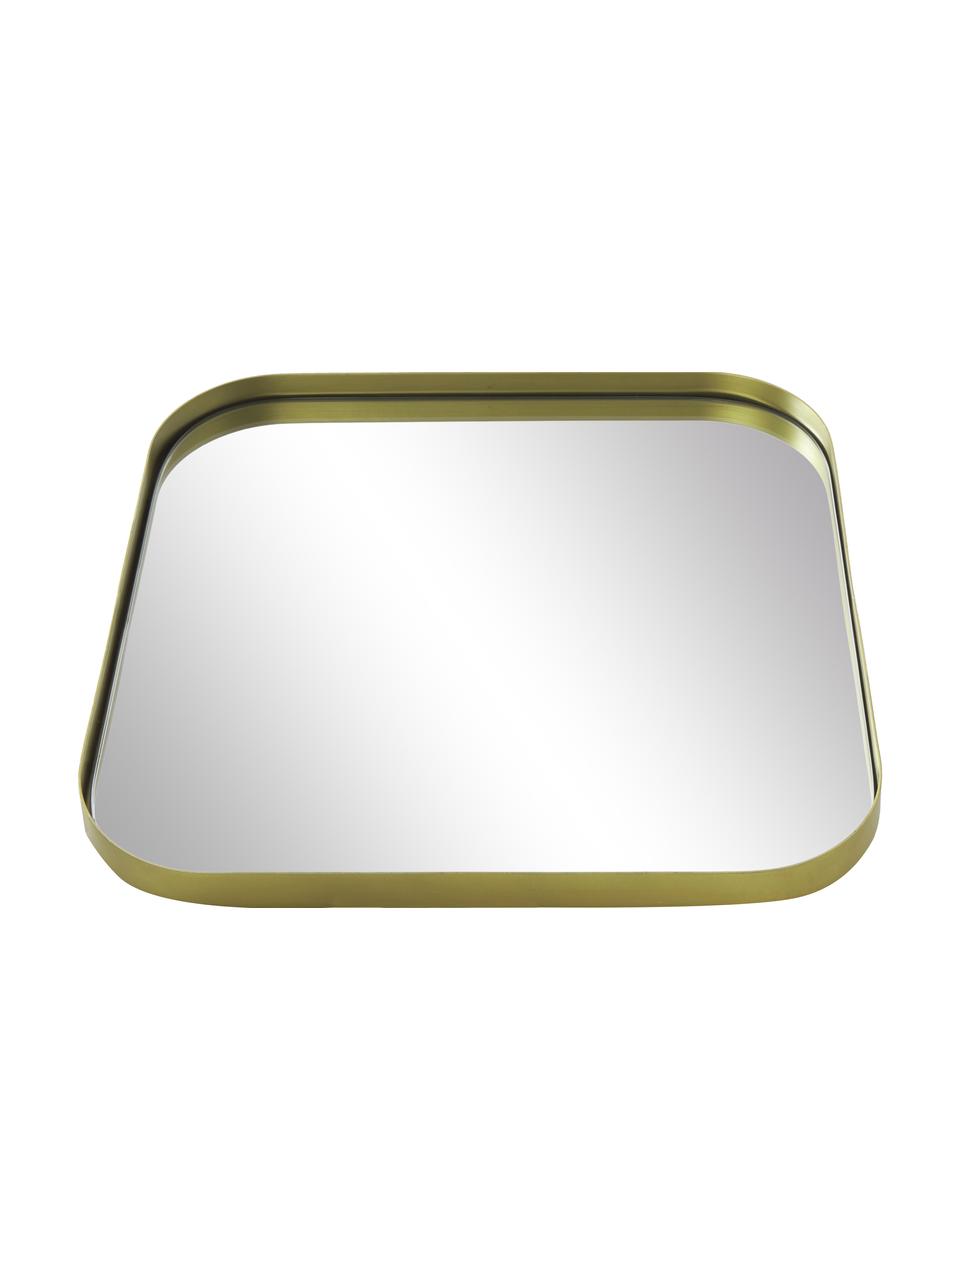 Eckiger Wandspiegel Ivy, Rahmen: Metall, pulverbeschichtet, Rückseite: Mitteldichte Holzfaserpla, Spiegelfläche: Spiegelglas, Goldfarben, B 55 x H 55 cm